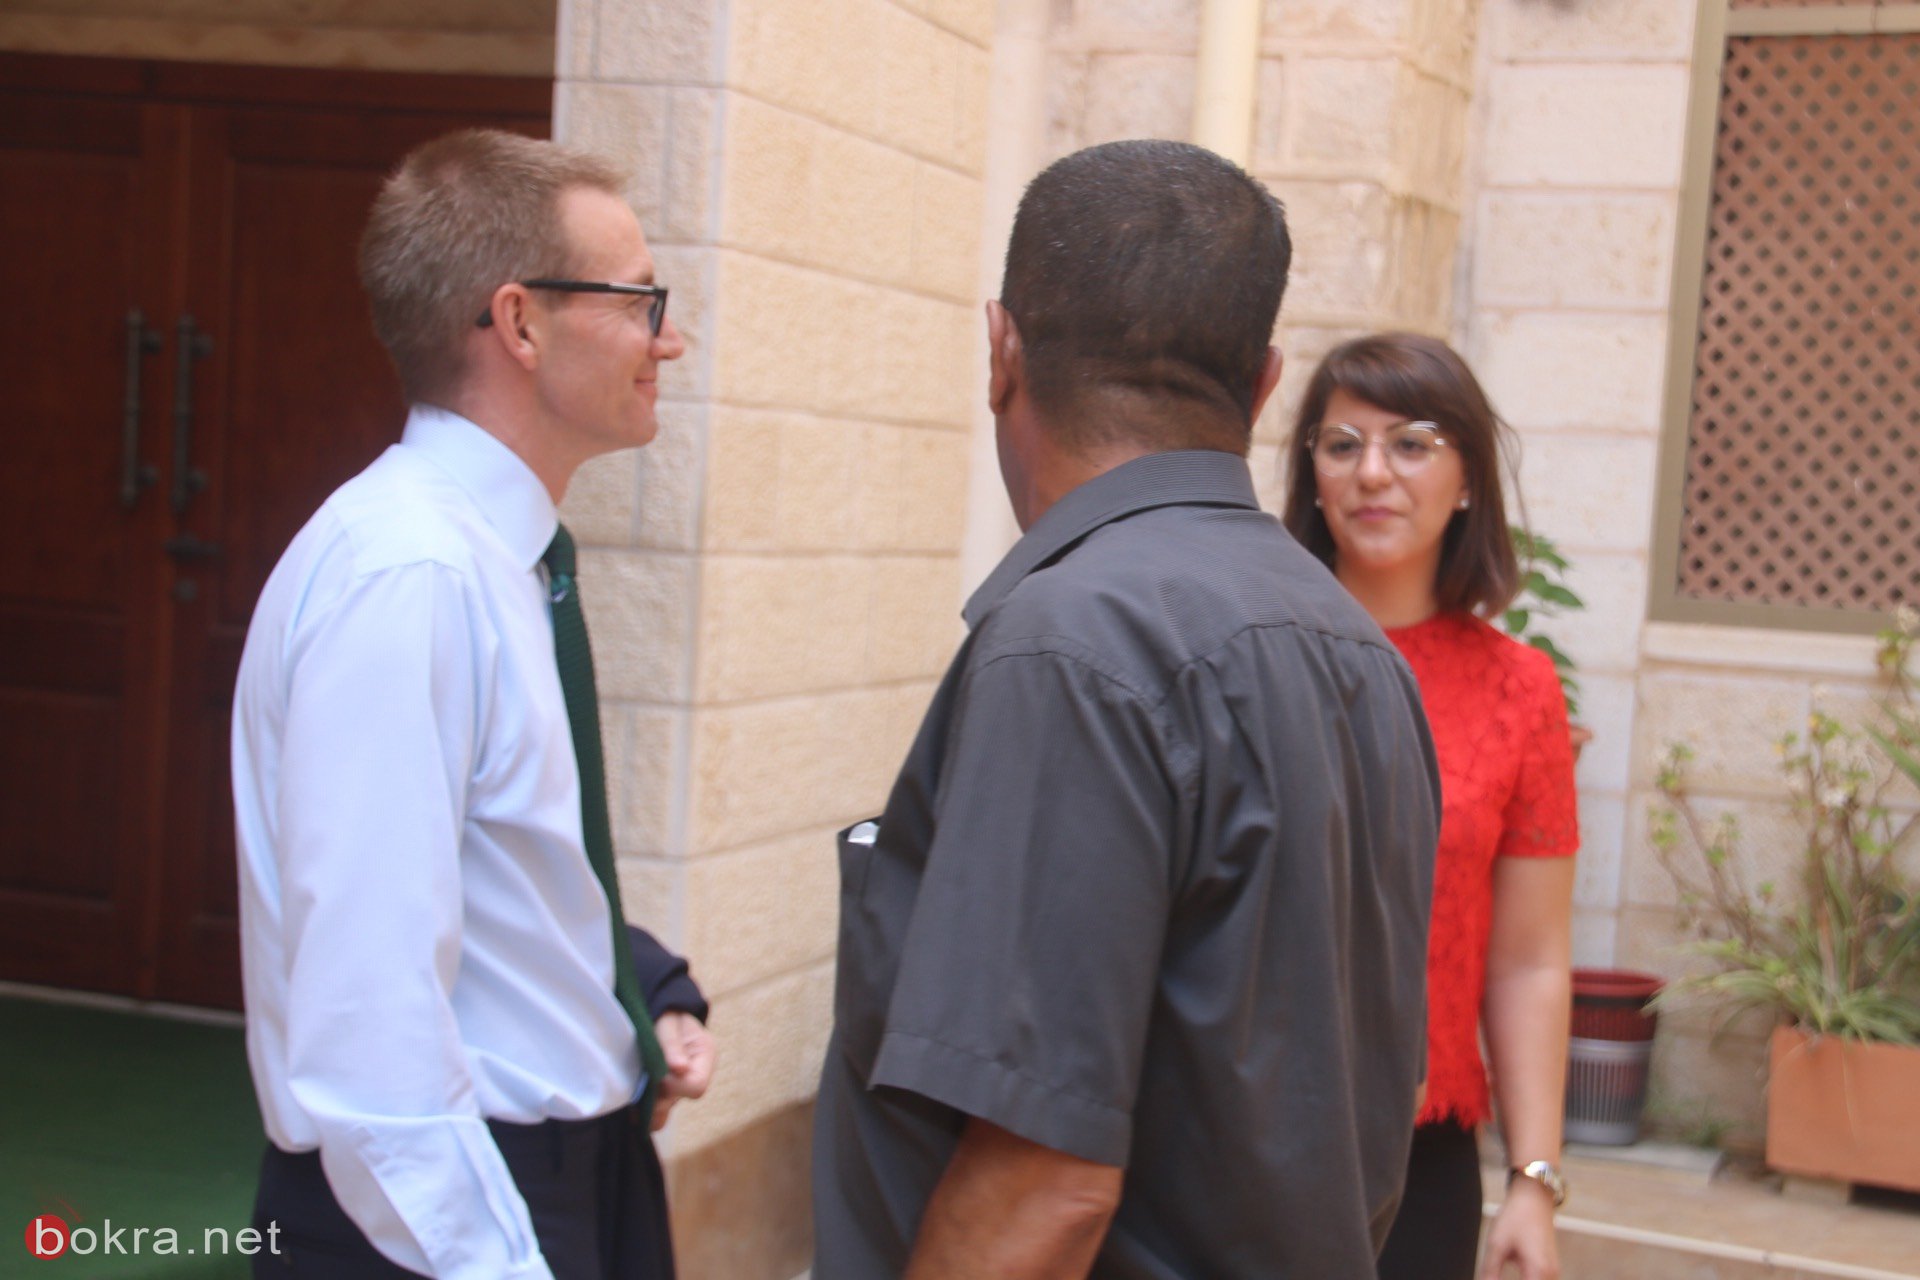 السفير البريطاني الجديد نيل ويچن يزور الناصرة وهذا ما قاله لـ"بُكرا"-19